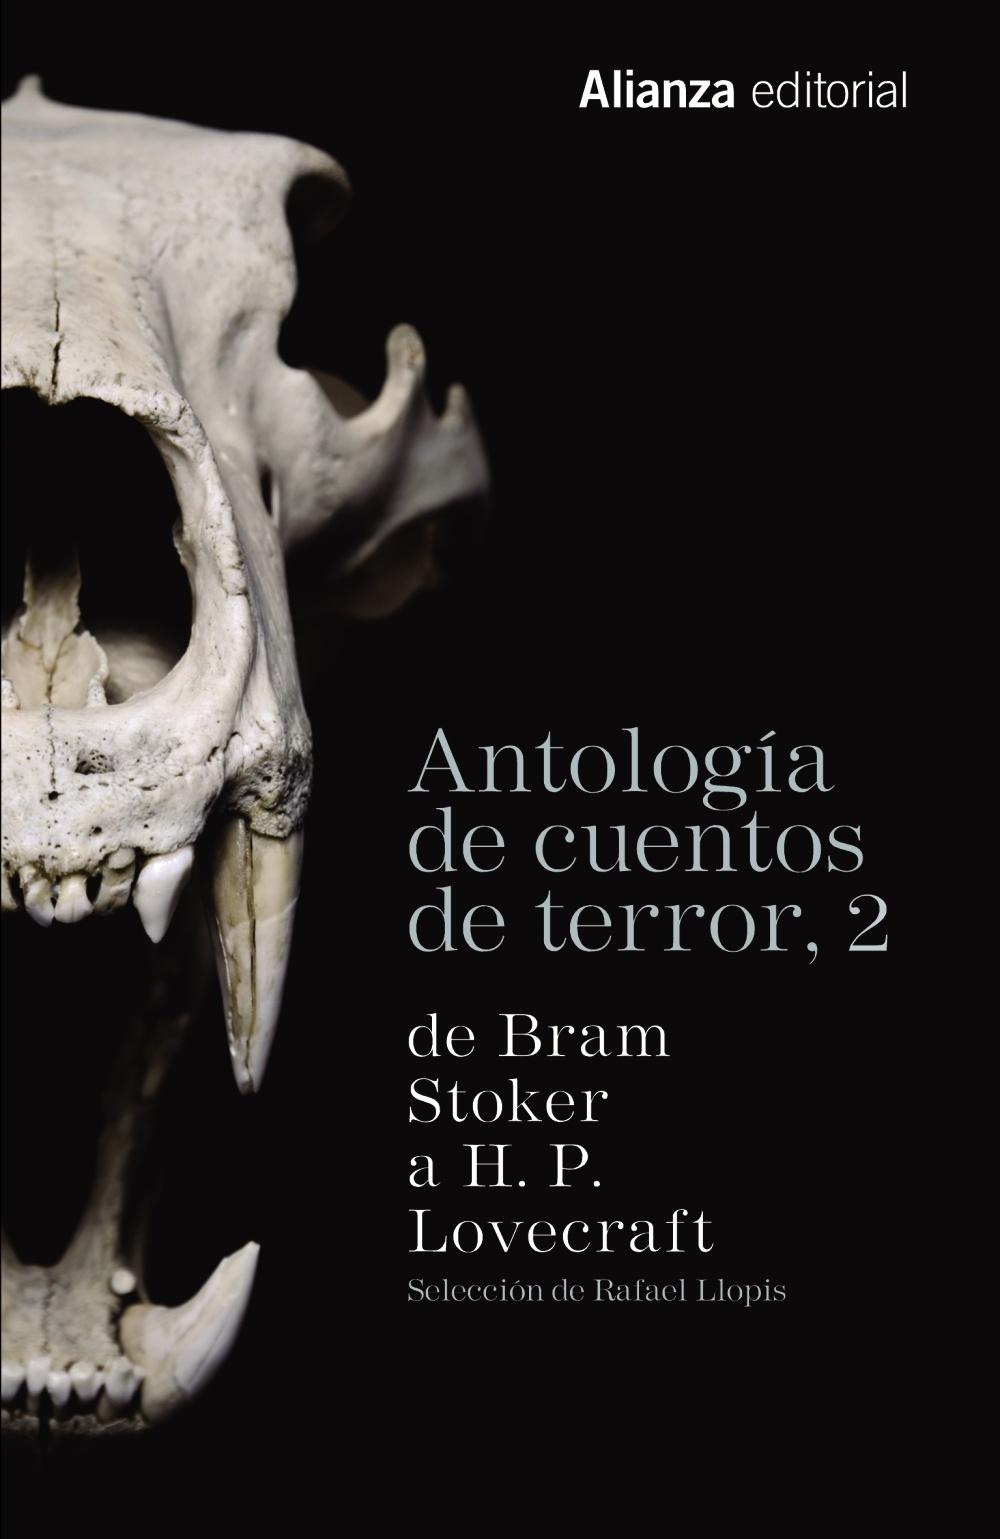 Antología de Cuentos de Terror, 2 "De Bram Stoker a H. P. Lovecraft"